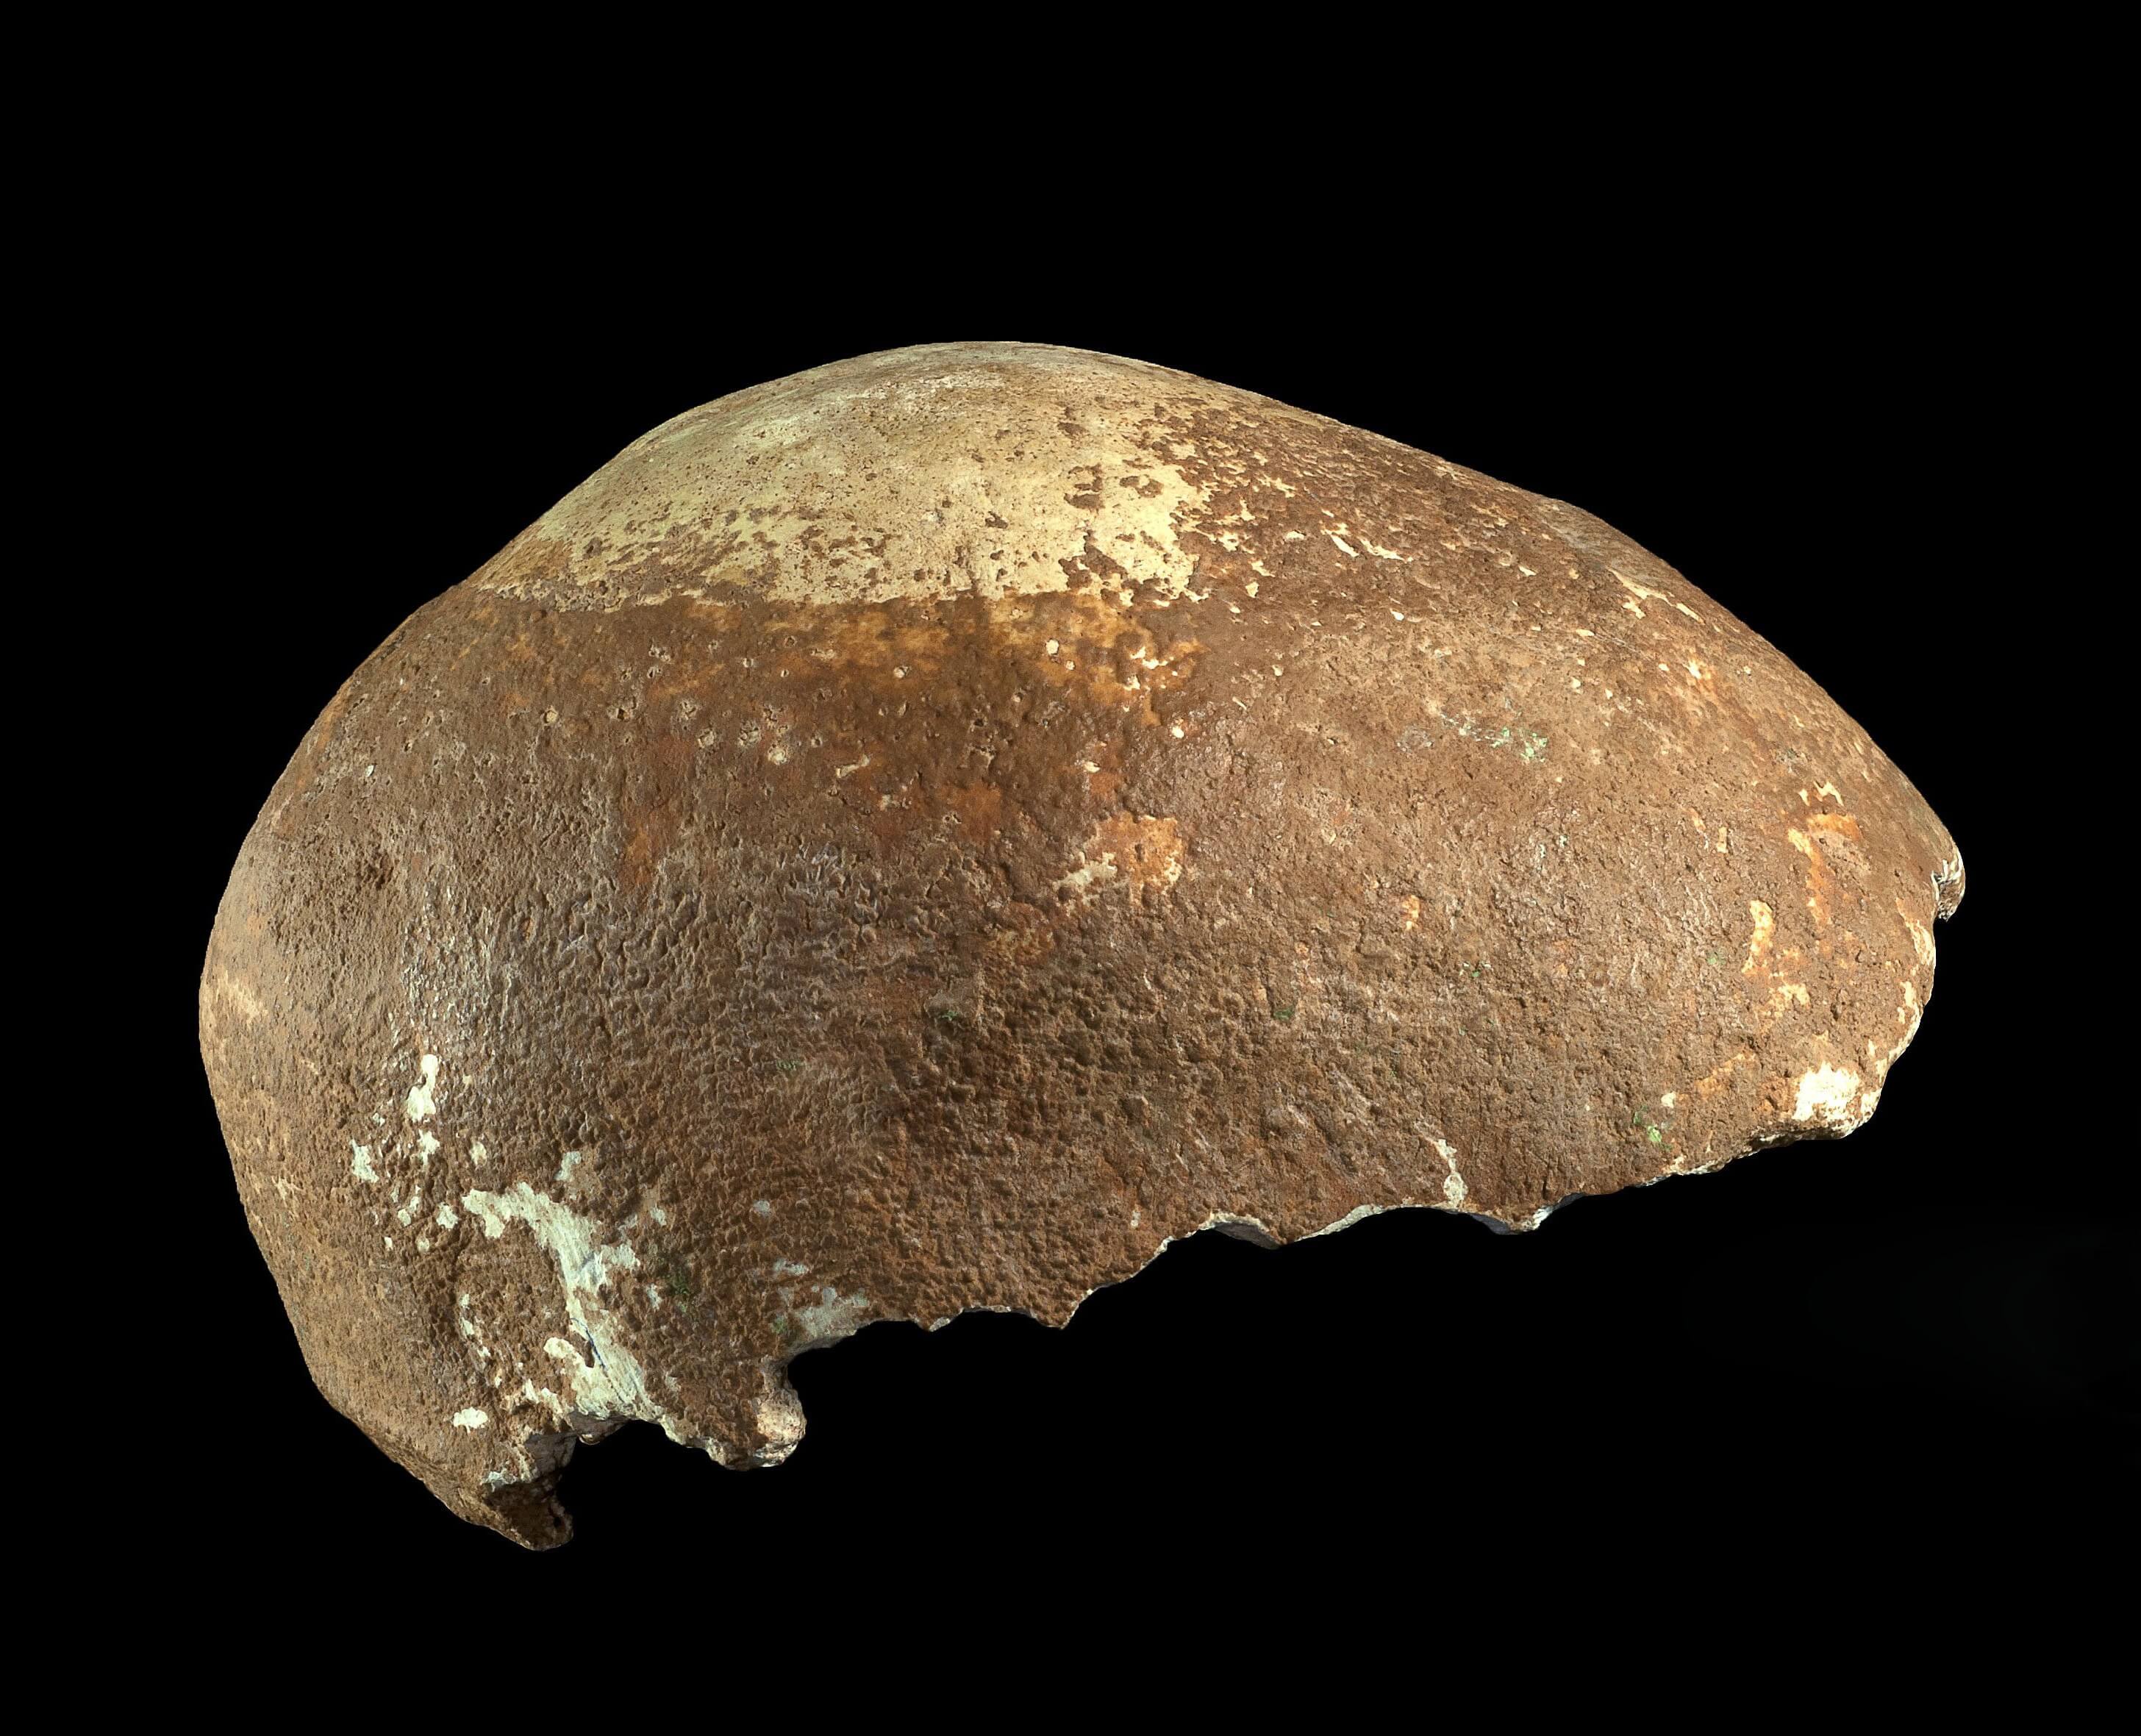 גולגולת אדם מודרני מלפני 55 אלף שנה שהתגלתה במערת מנות בגליל המערבי. צילום: קלרה עמית, באדיבות רשות העתיקות